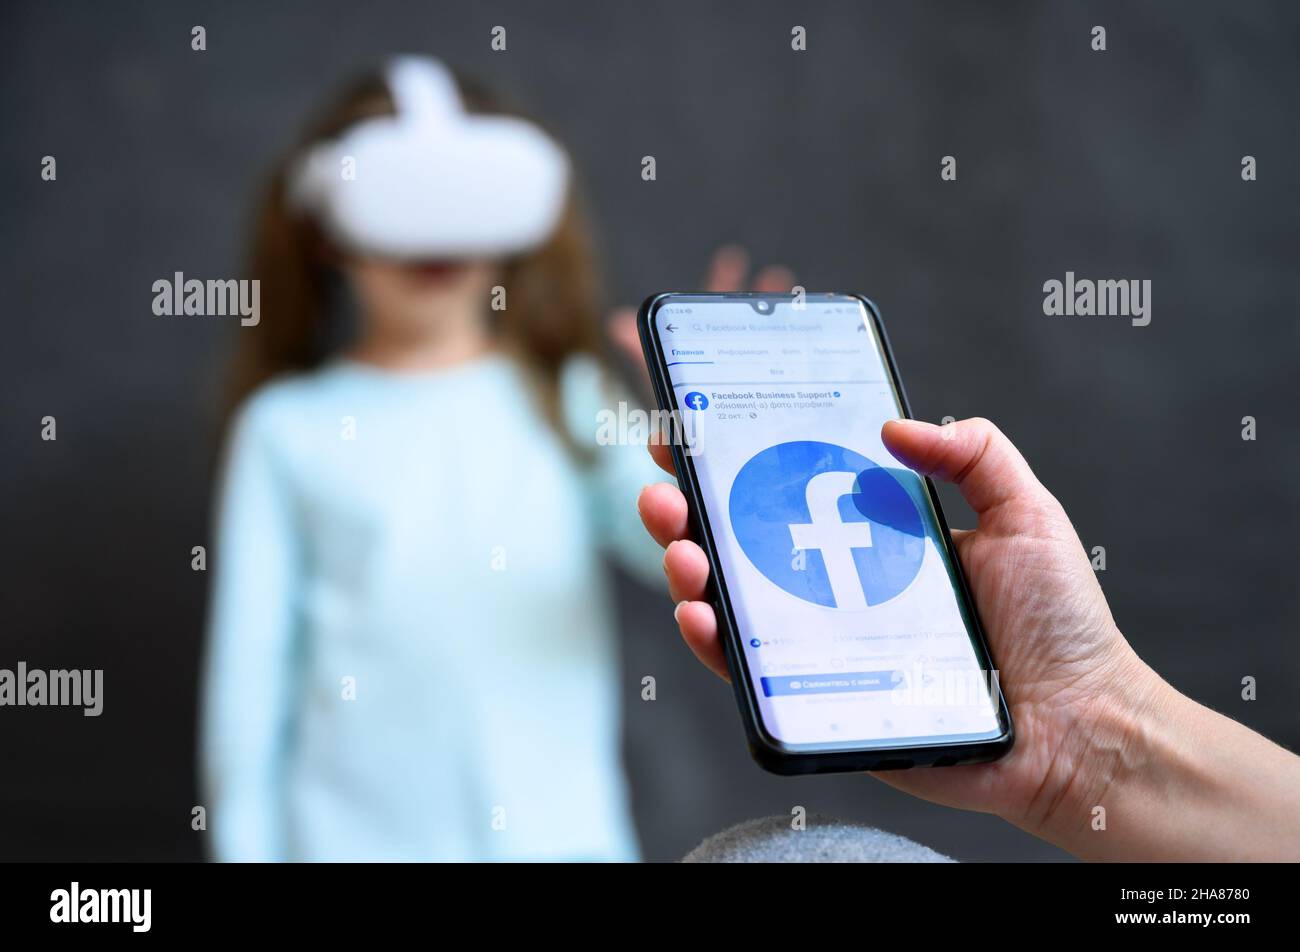 Moscou - 2 décembre 2021: Personne regarde les médias sociaux Facebook dans le téléphone mobile sur le fond de l'enfant à l'aide d'un casque futuriste de réalité virtuelle.Concept de Banque D'Images